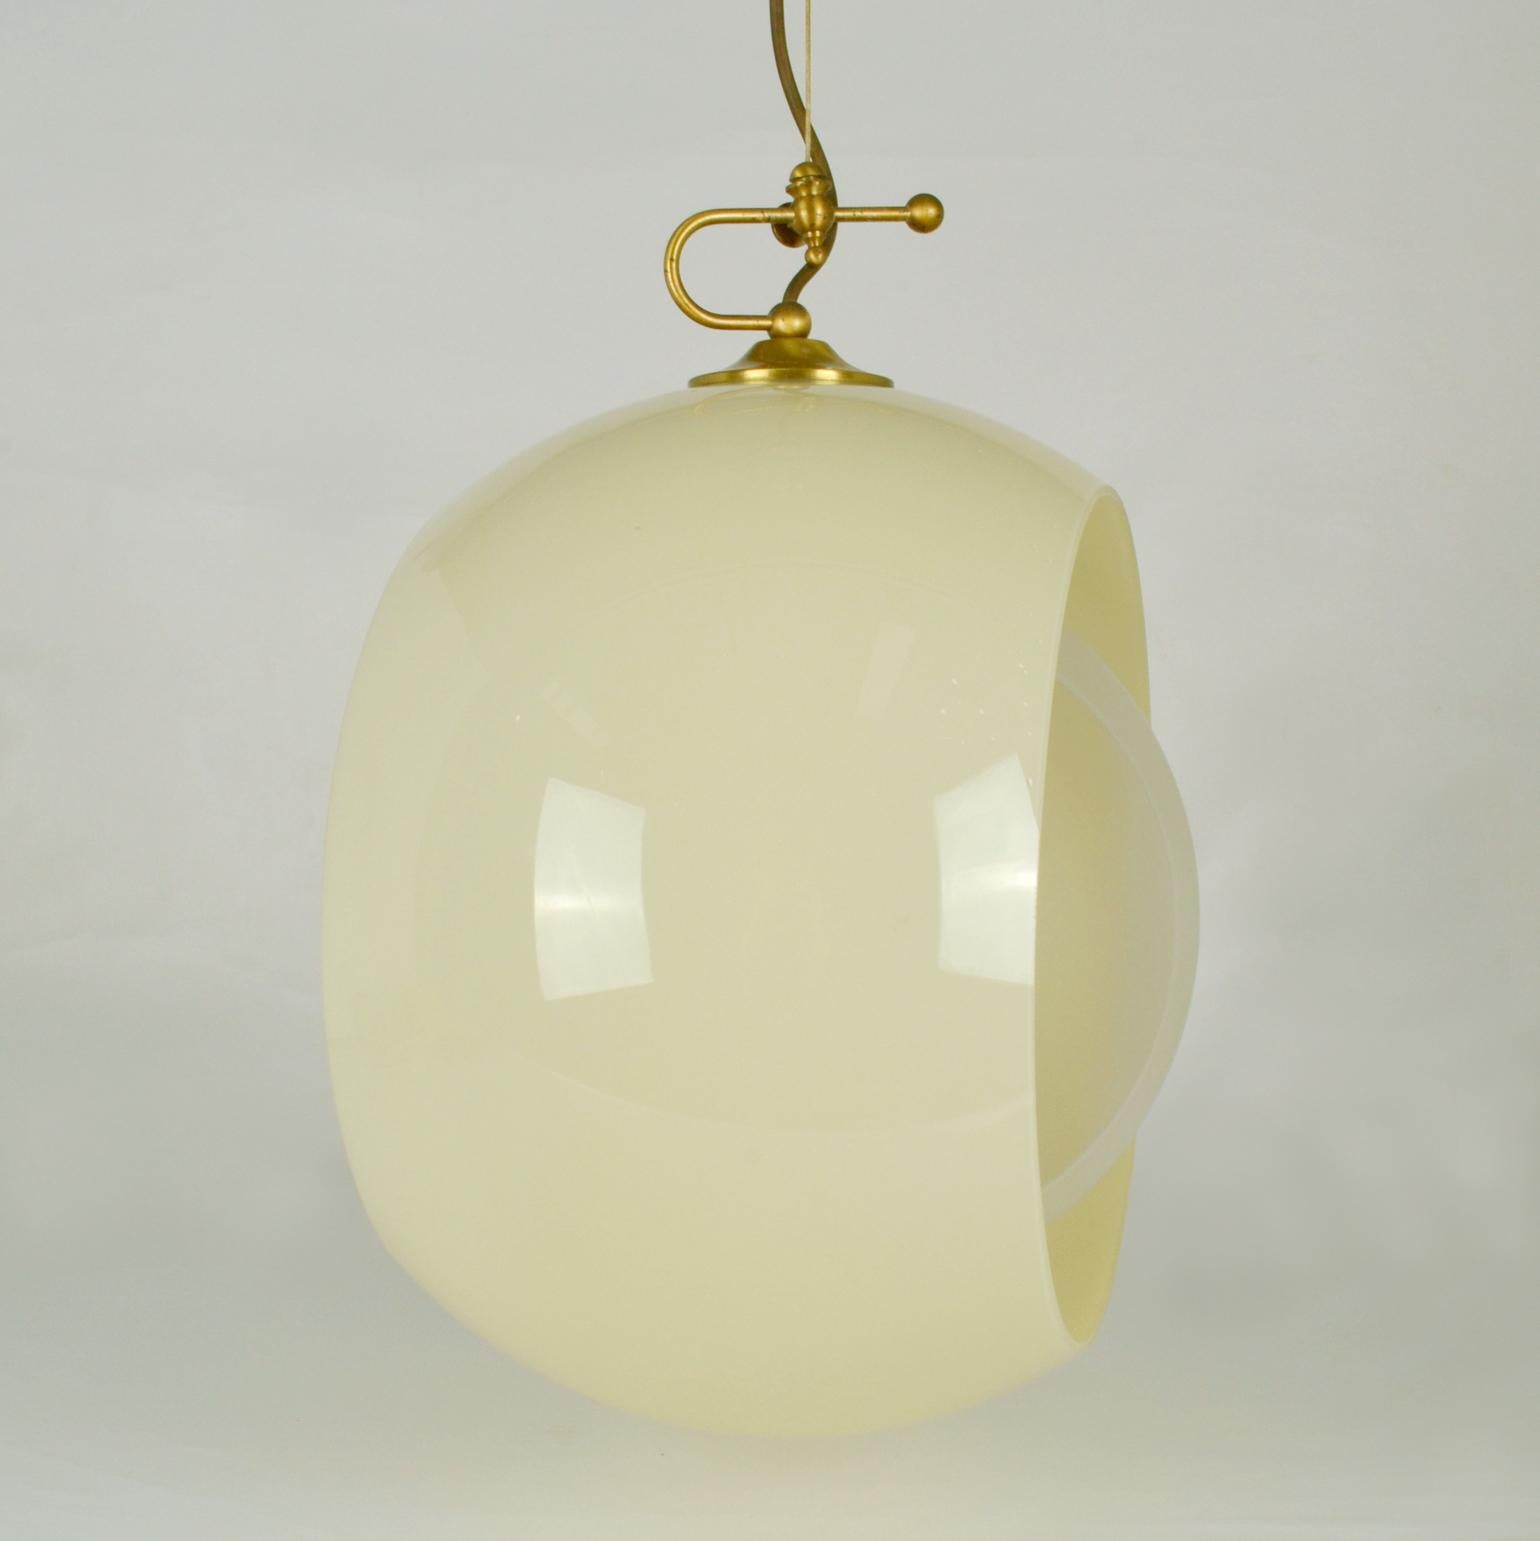 Italian Glass Pendant by Carlo Nason Mazzega, Eclipse, Venice 1960s For Sale 6